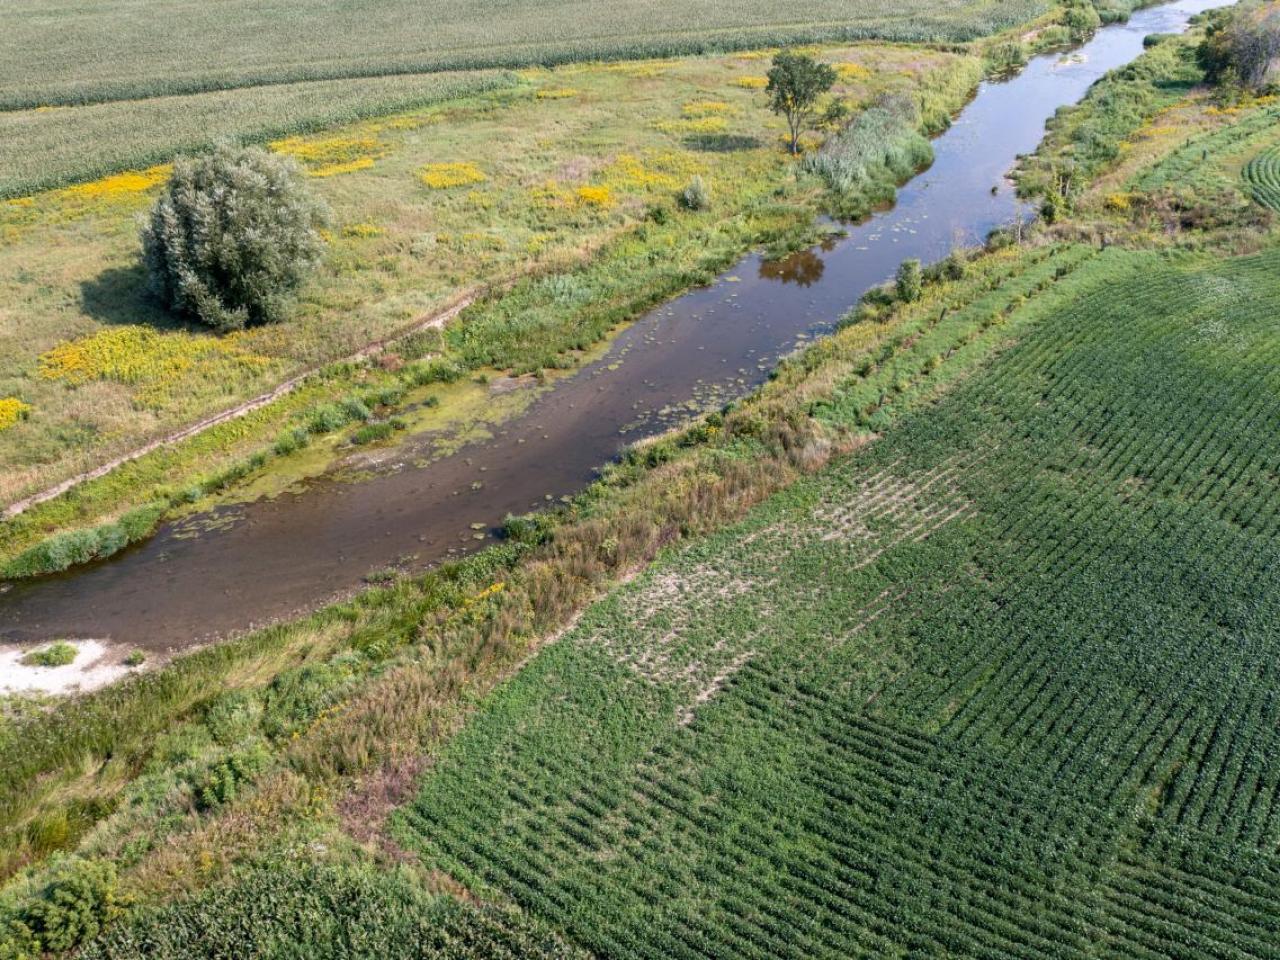 Agricultural landscape in Quebec, Canada.